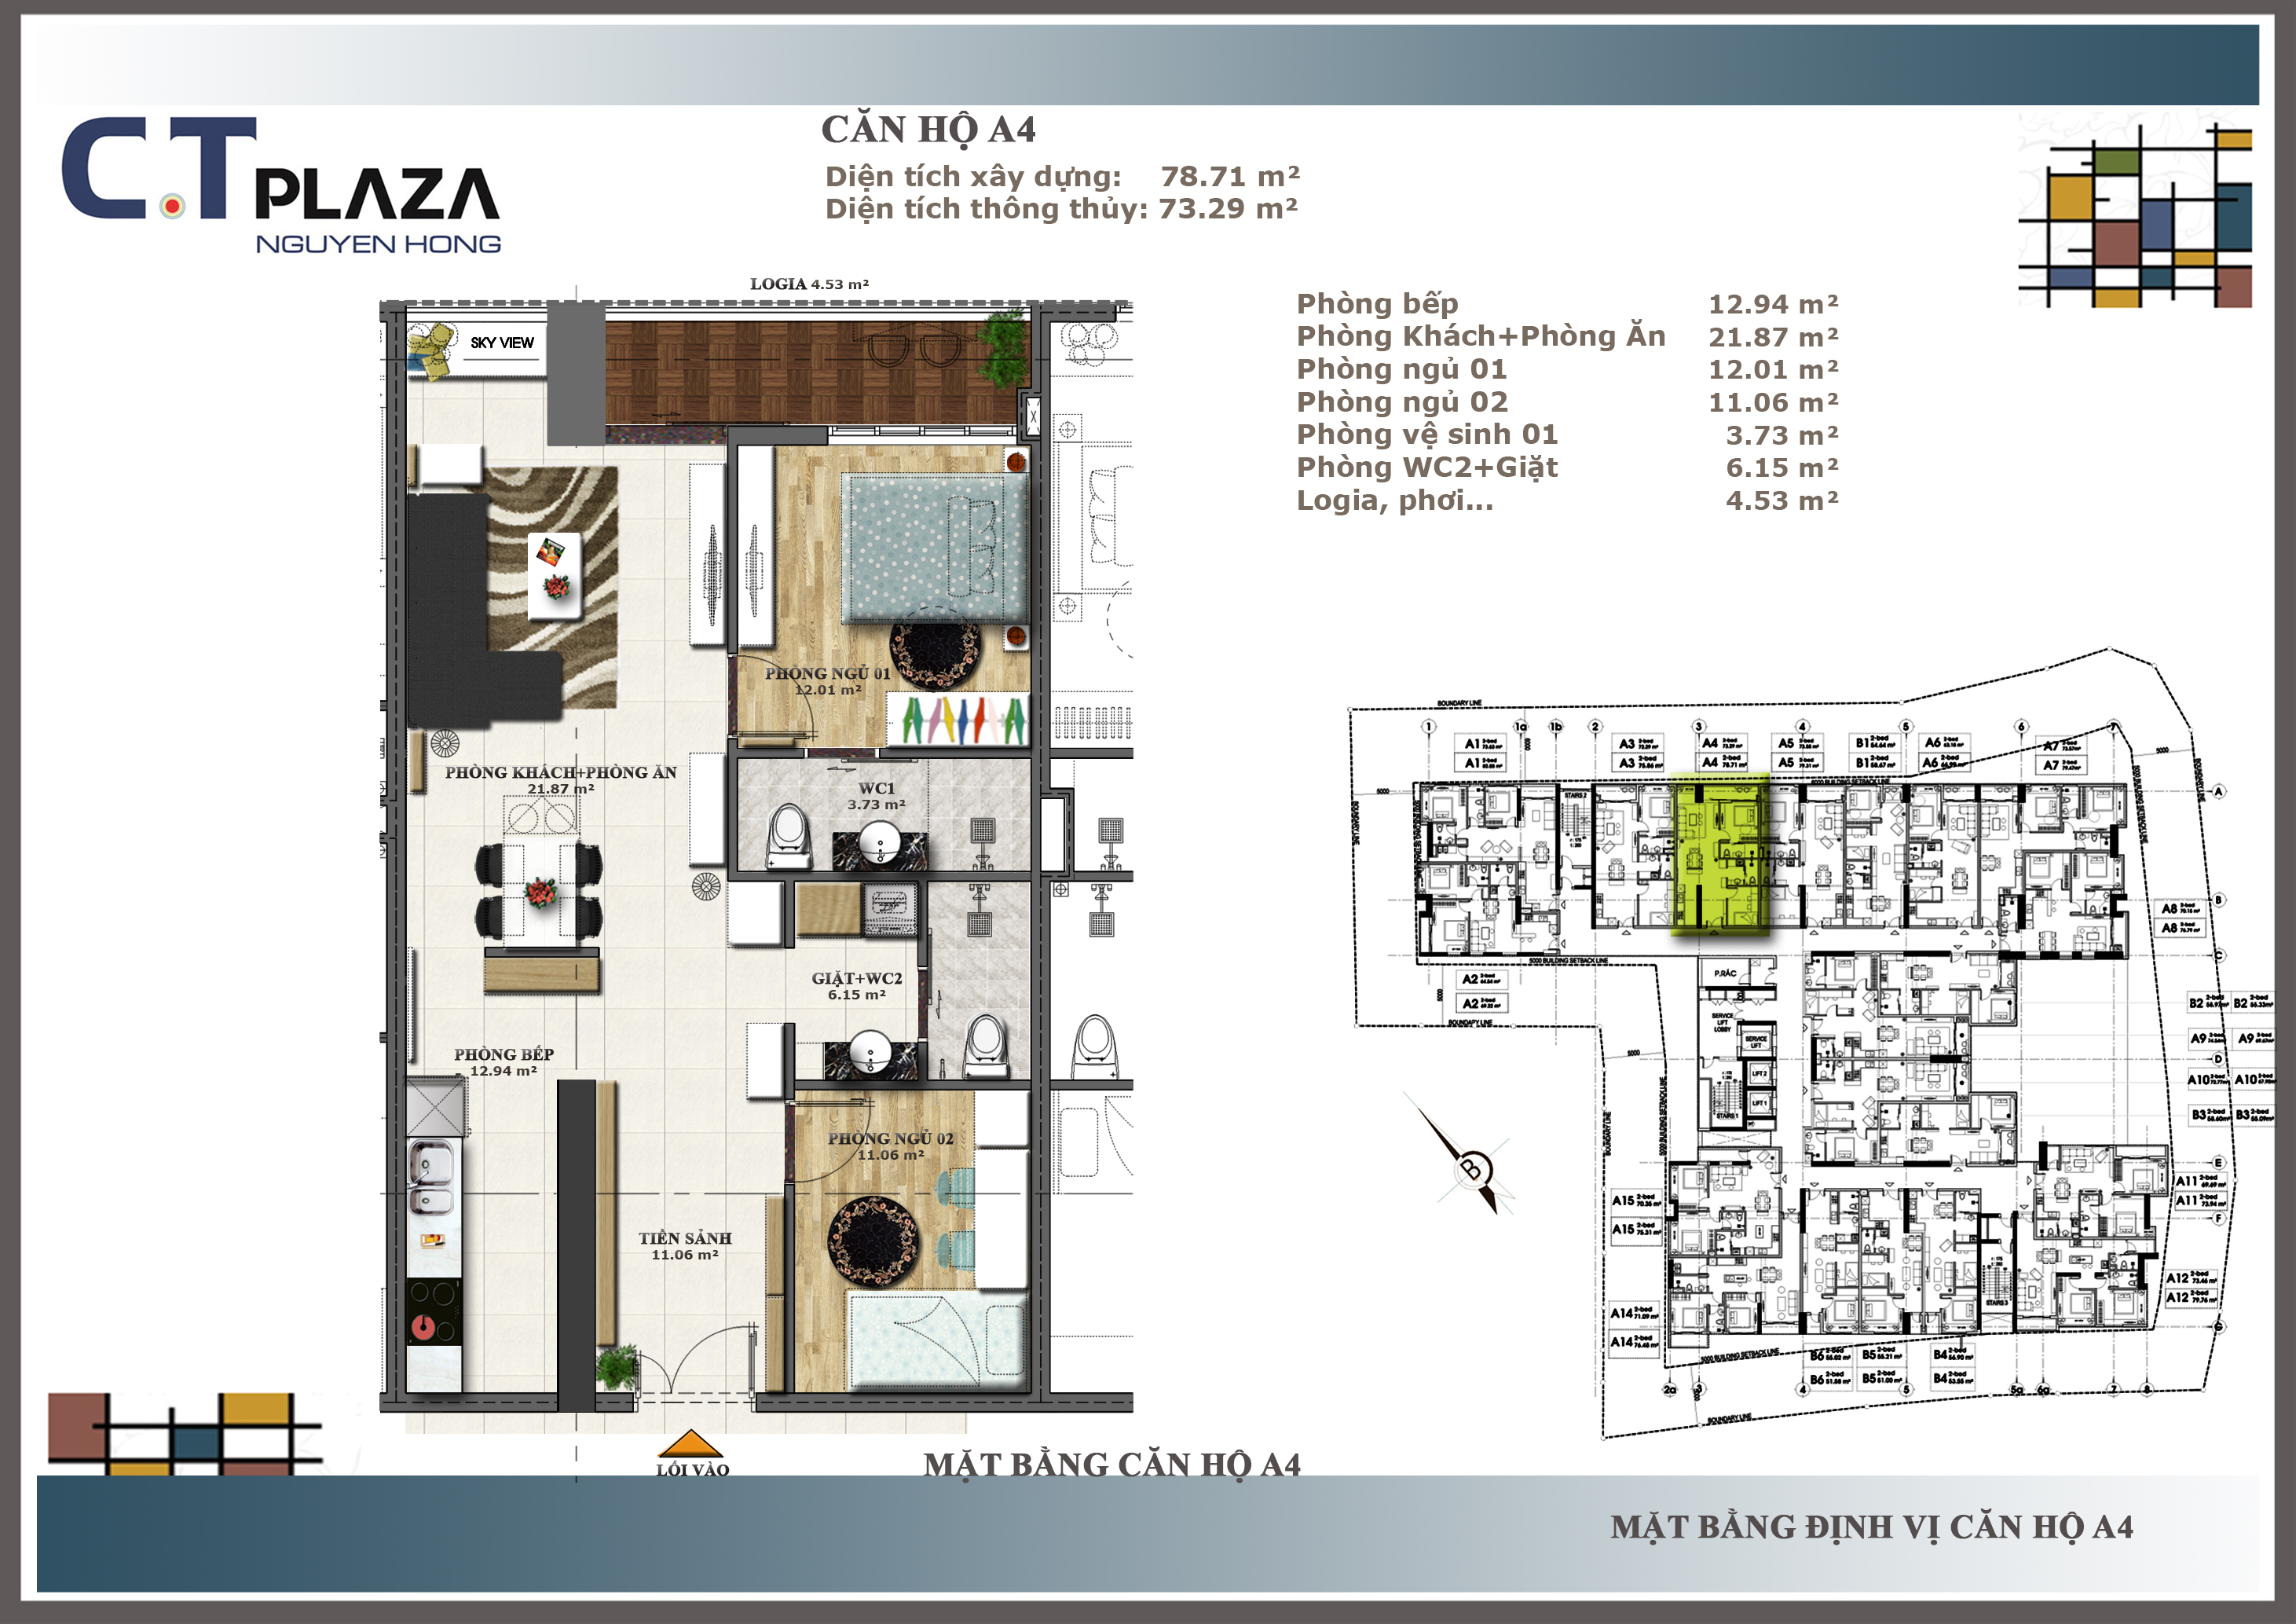 Layout tổng thể, nội thất của căn hộ phong cách Art – C.T Plaza Nguyên Hồng  – Căn hộ C.T Plaza